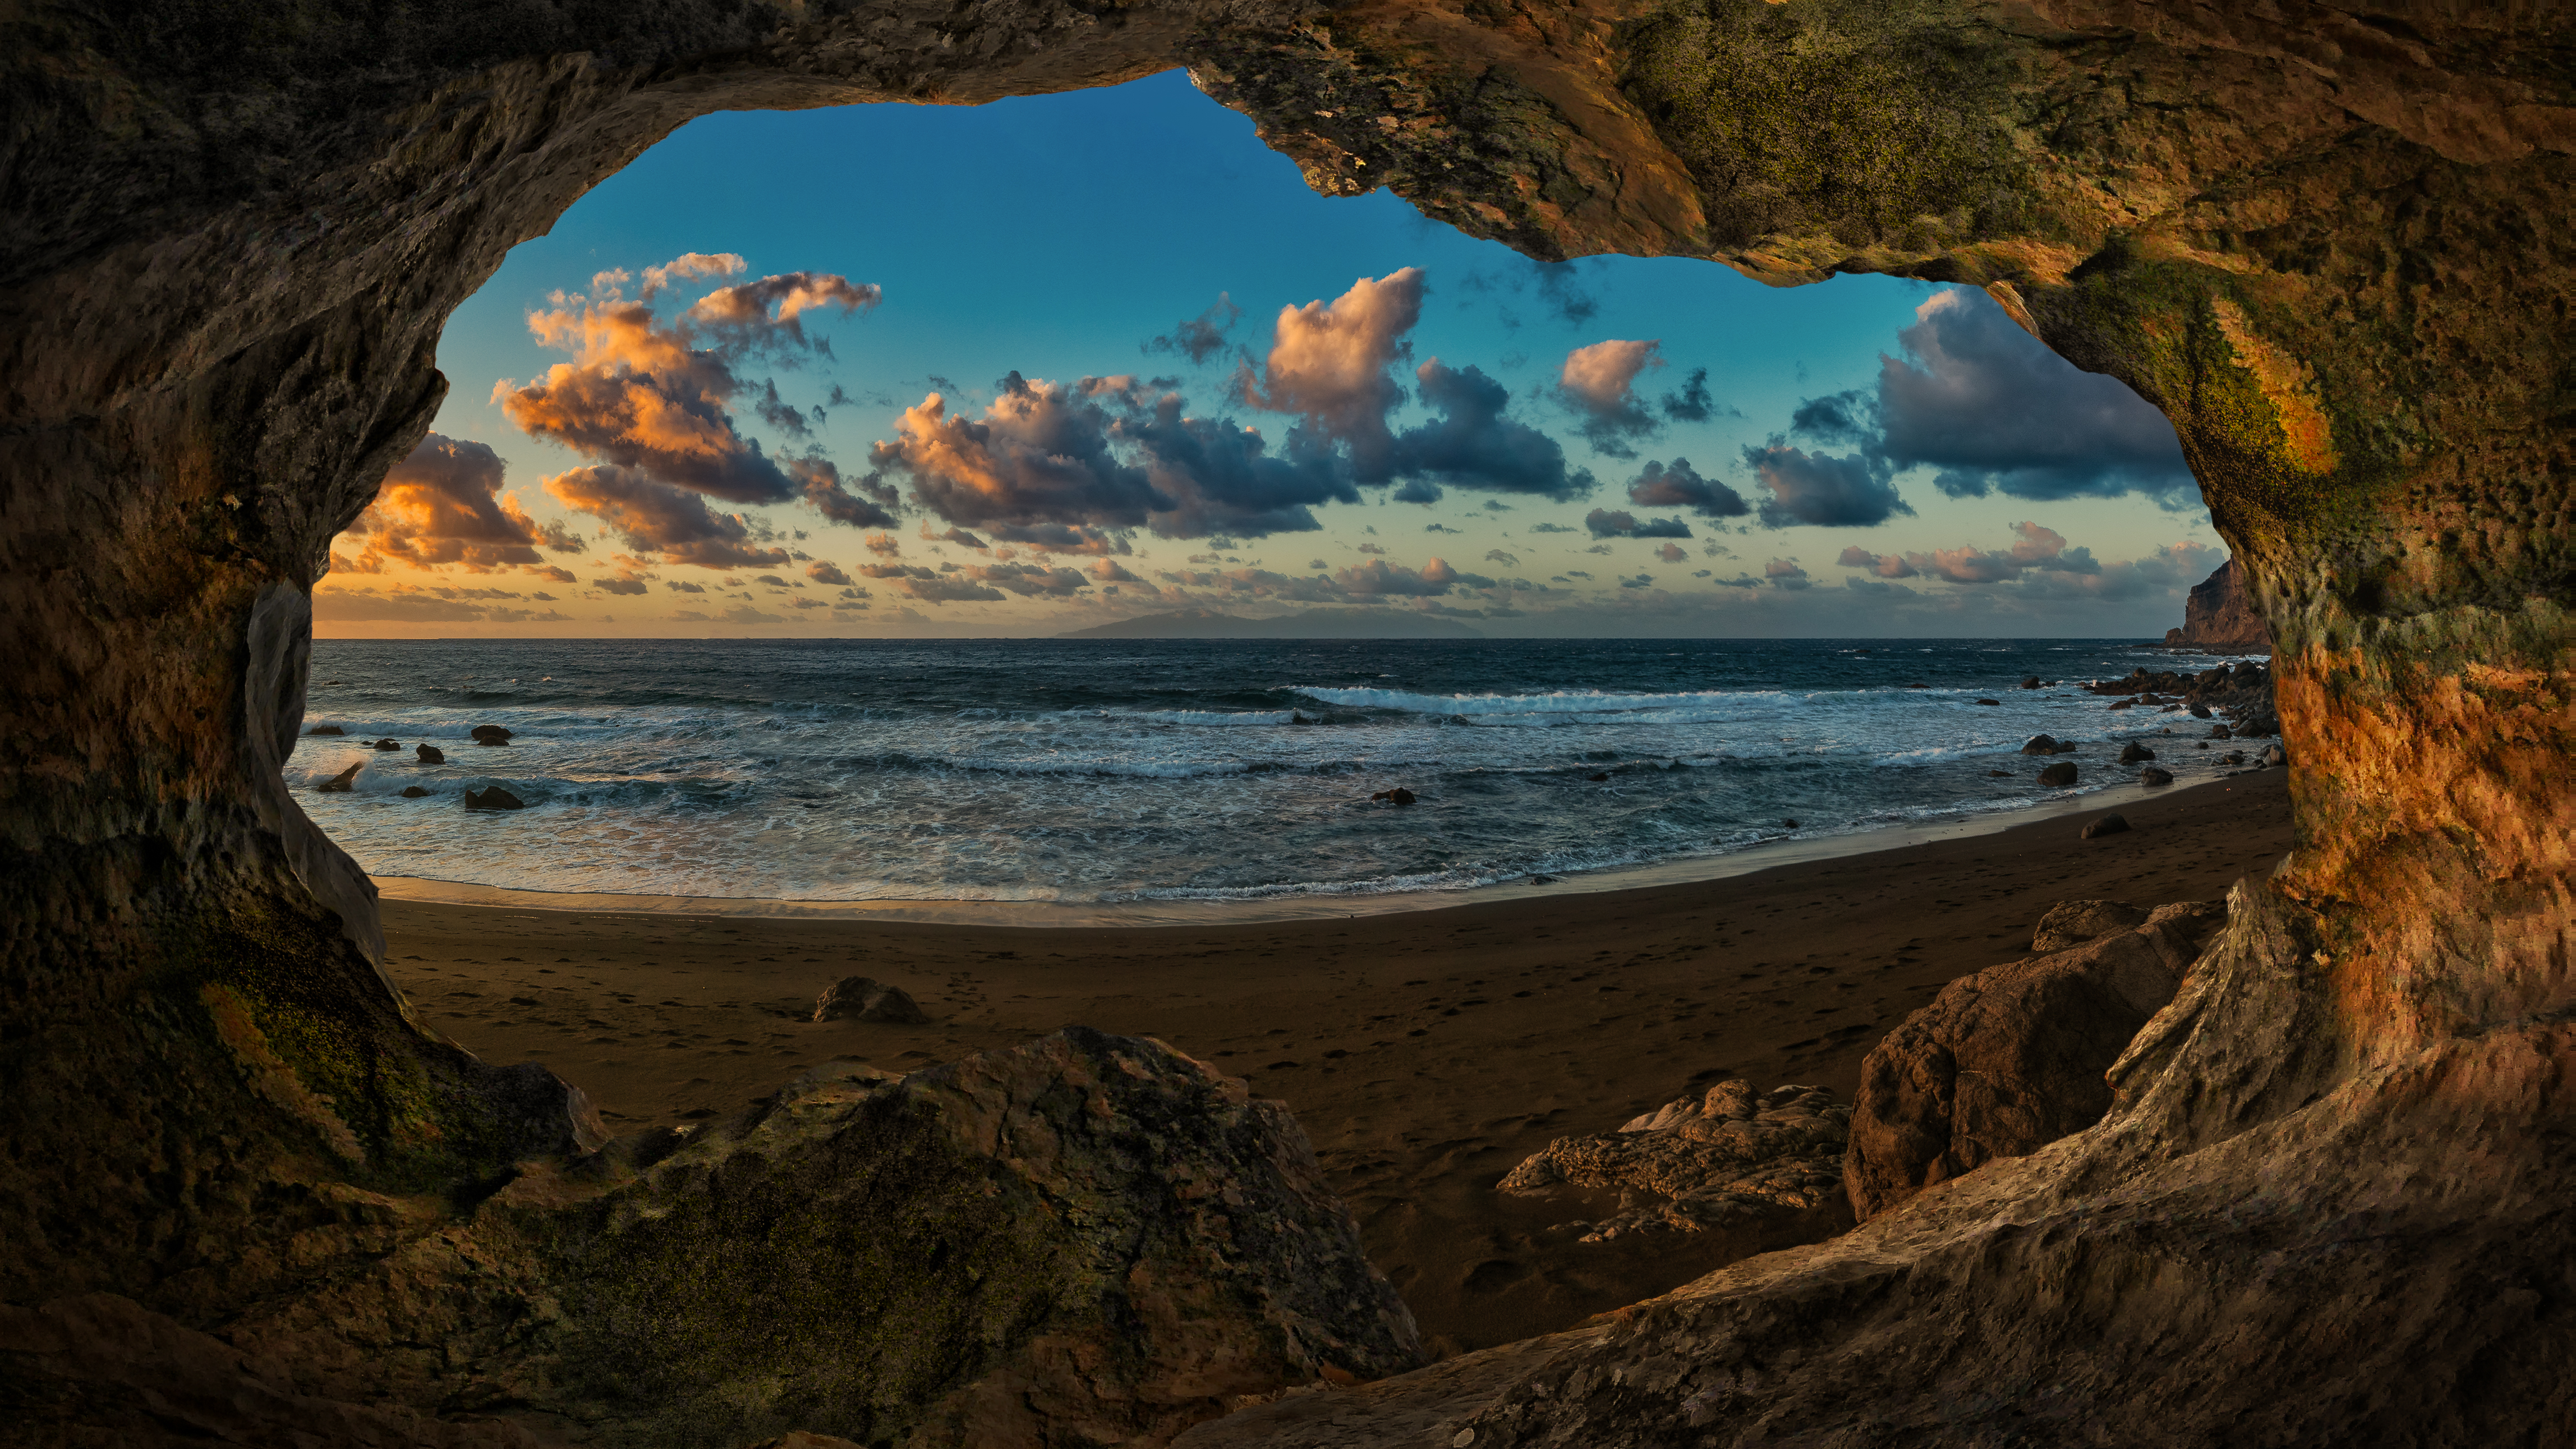 Photomontage Canary Islands Nature Sky Sea 4592x2583